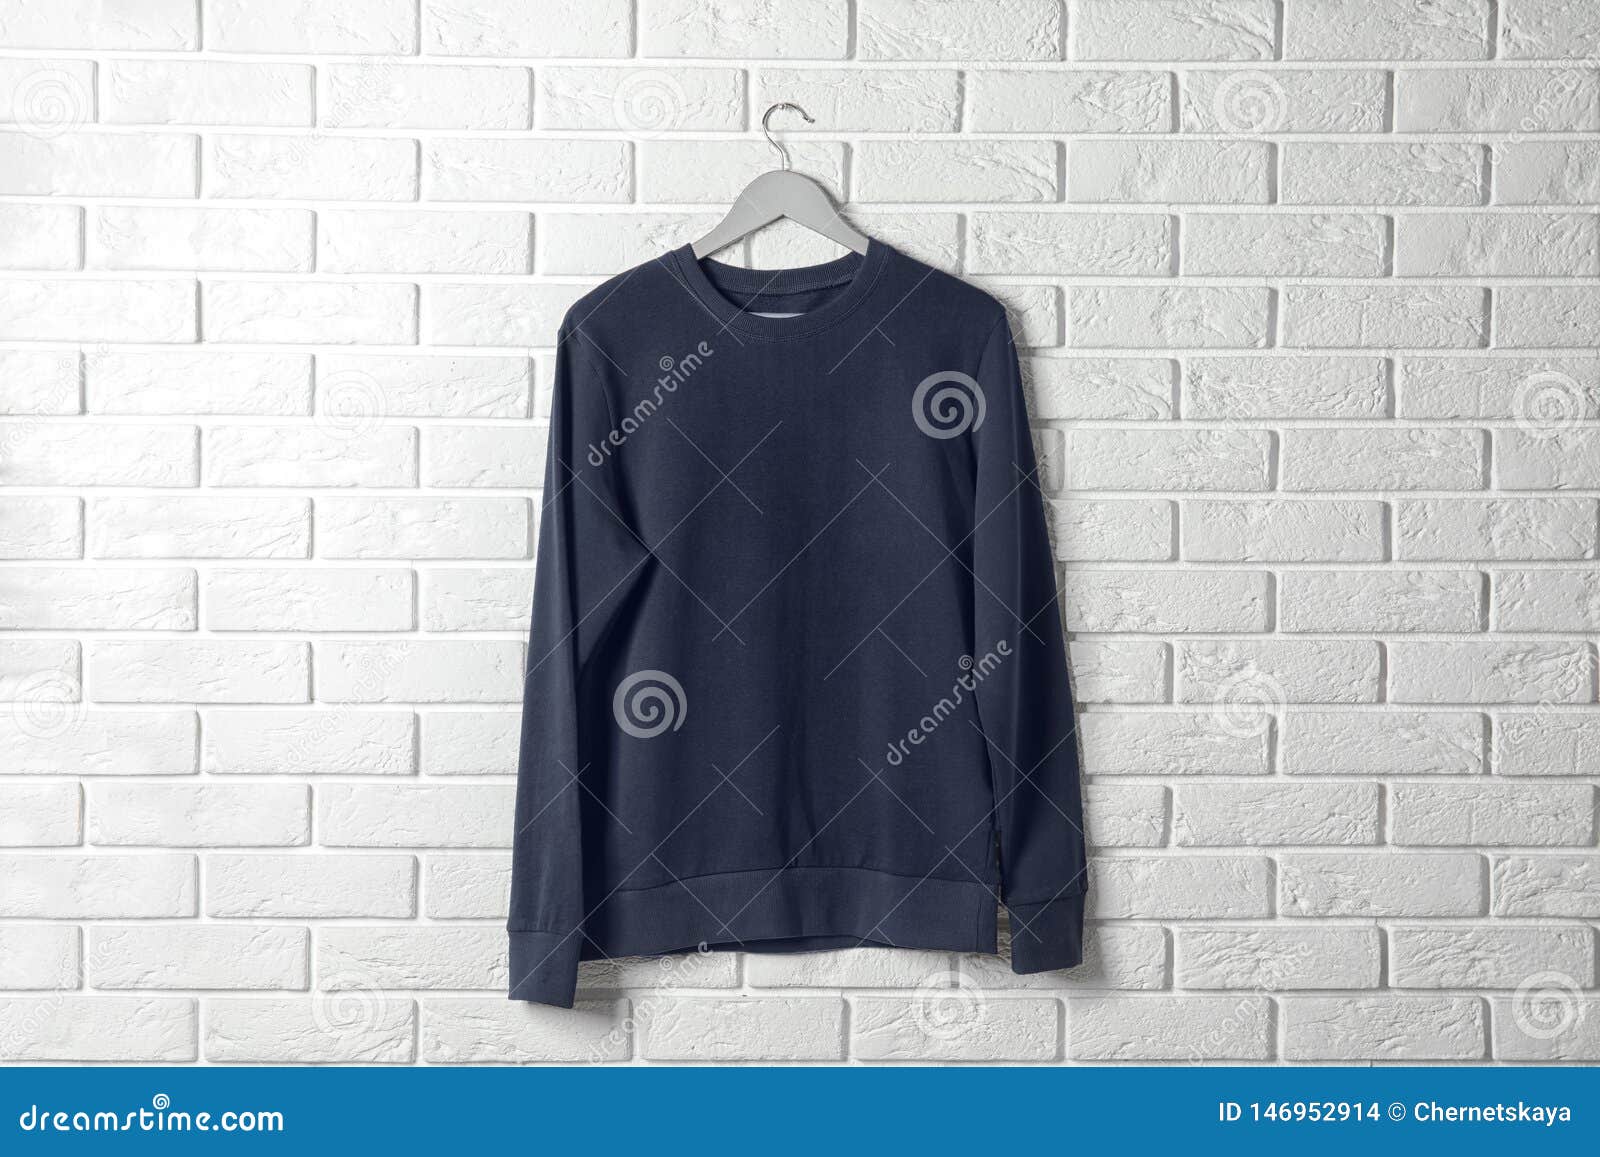 Download Hanger With Dark Sweatshirt. Mockup For Design Stock Photo ...